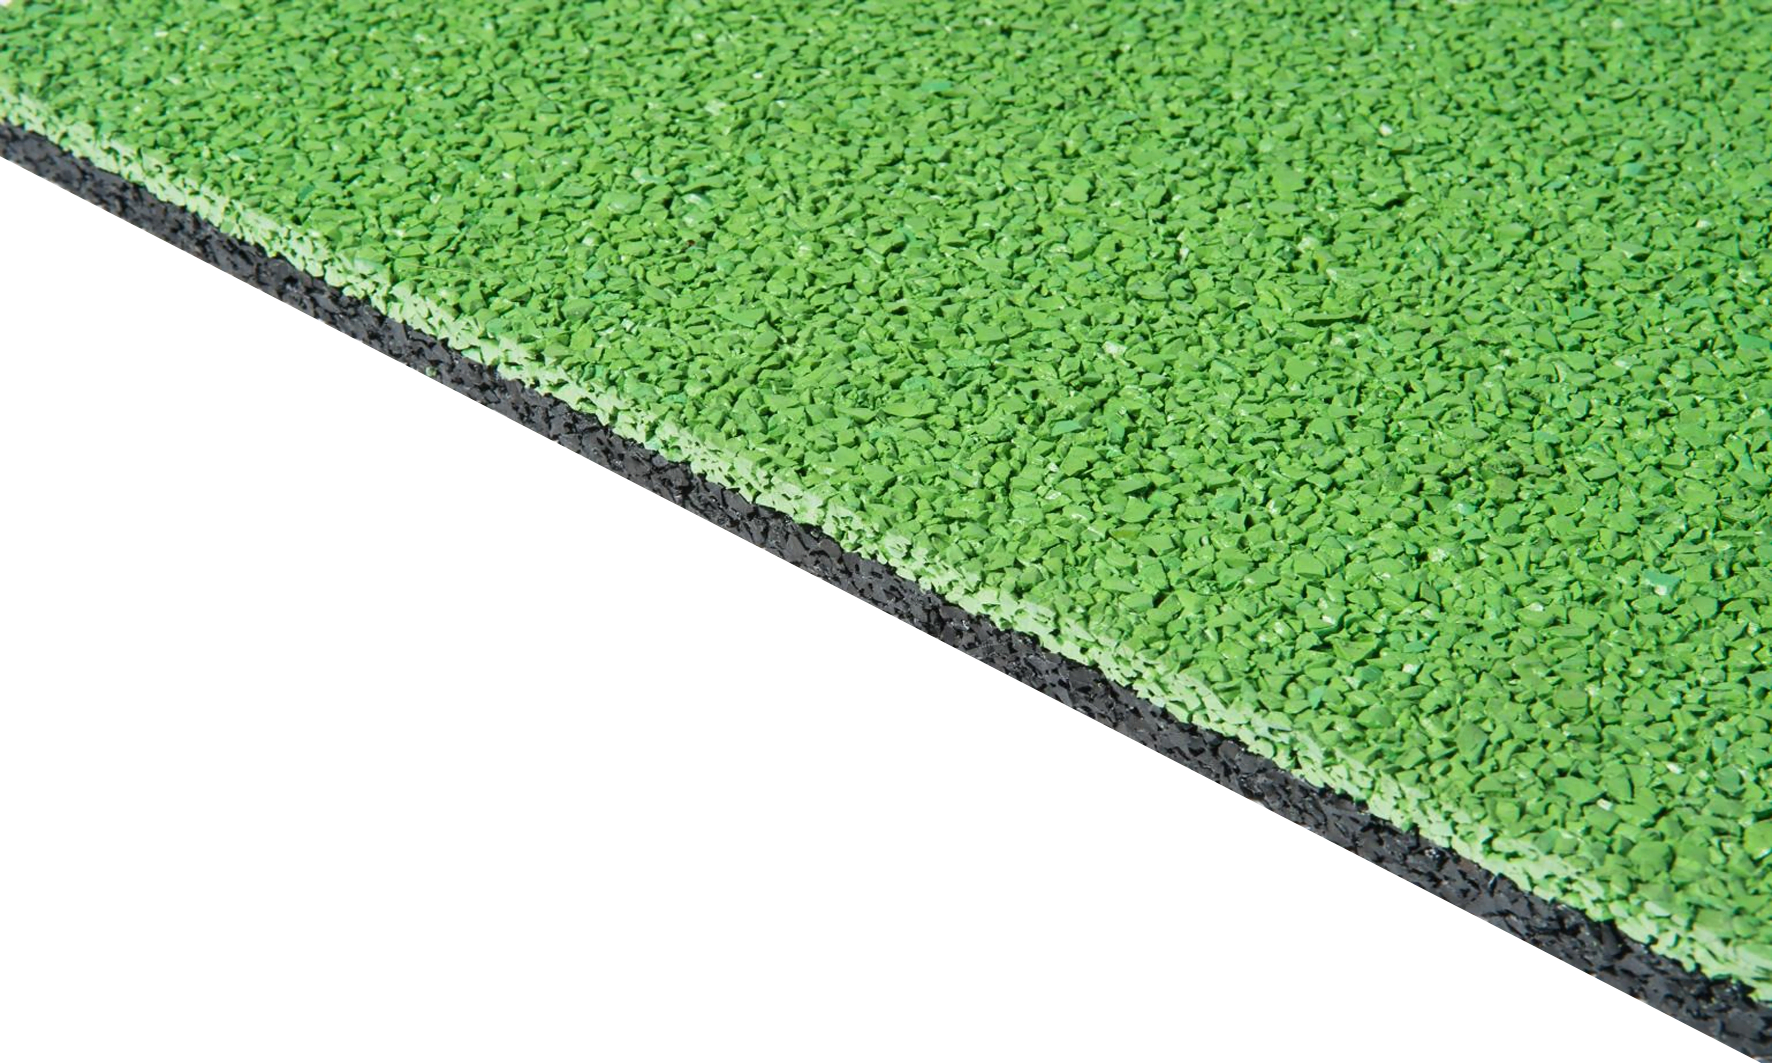 Thiết kế & Cấu tạo bề mặt sàn cao su EPDM giảm chấn cho sân chơi trẻ em